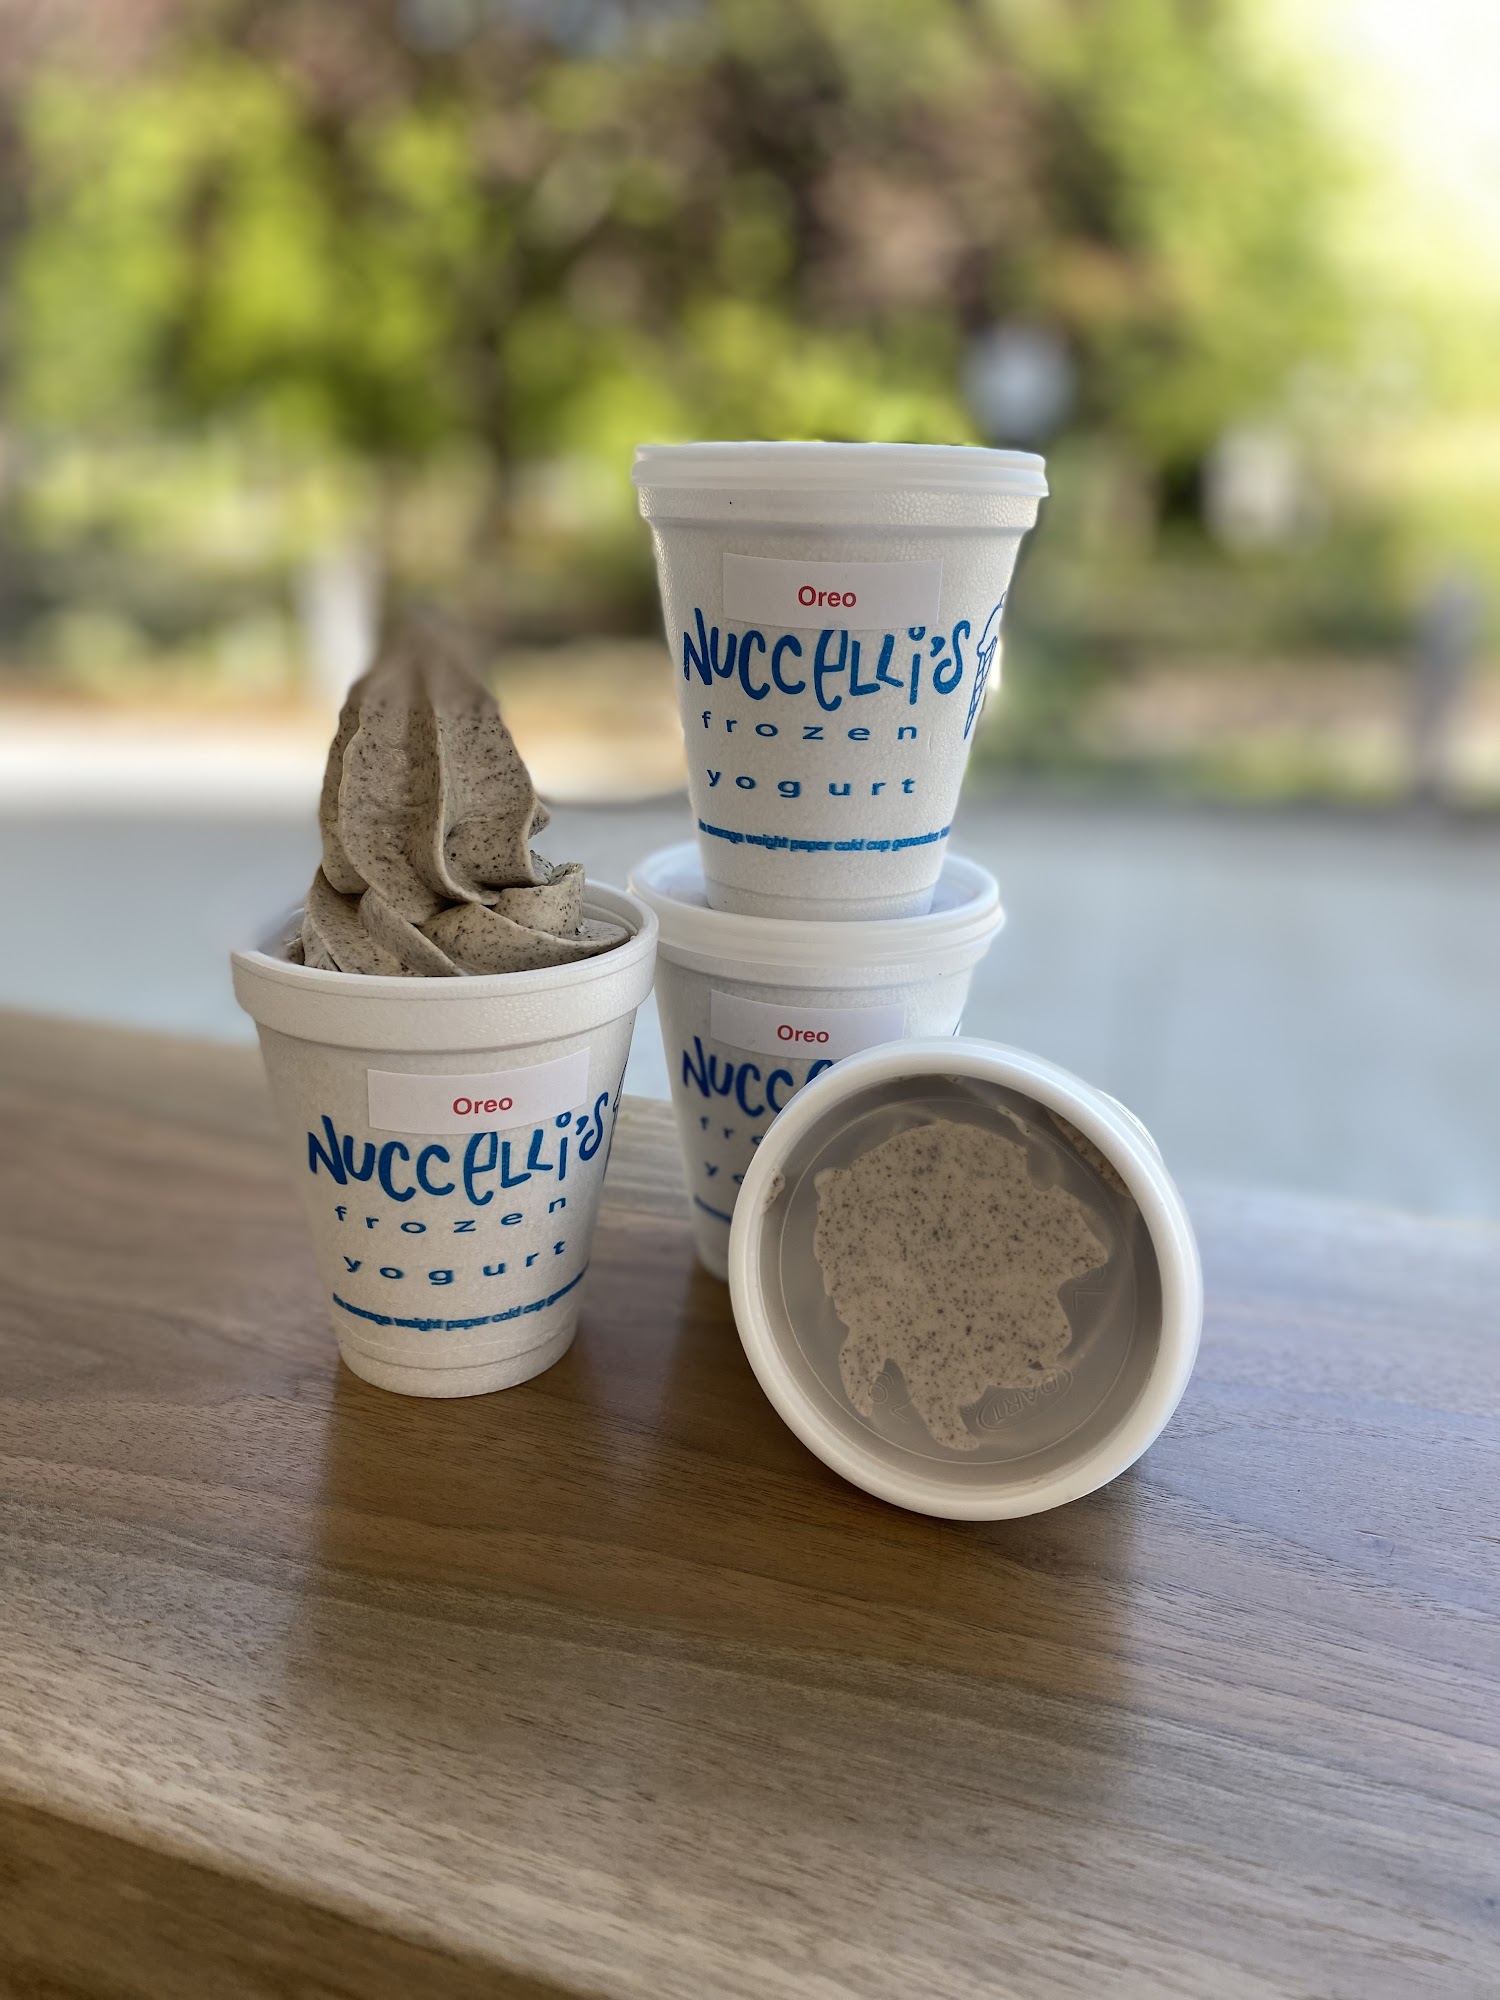 Nuccelli's Frozen Yogurt